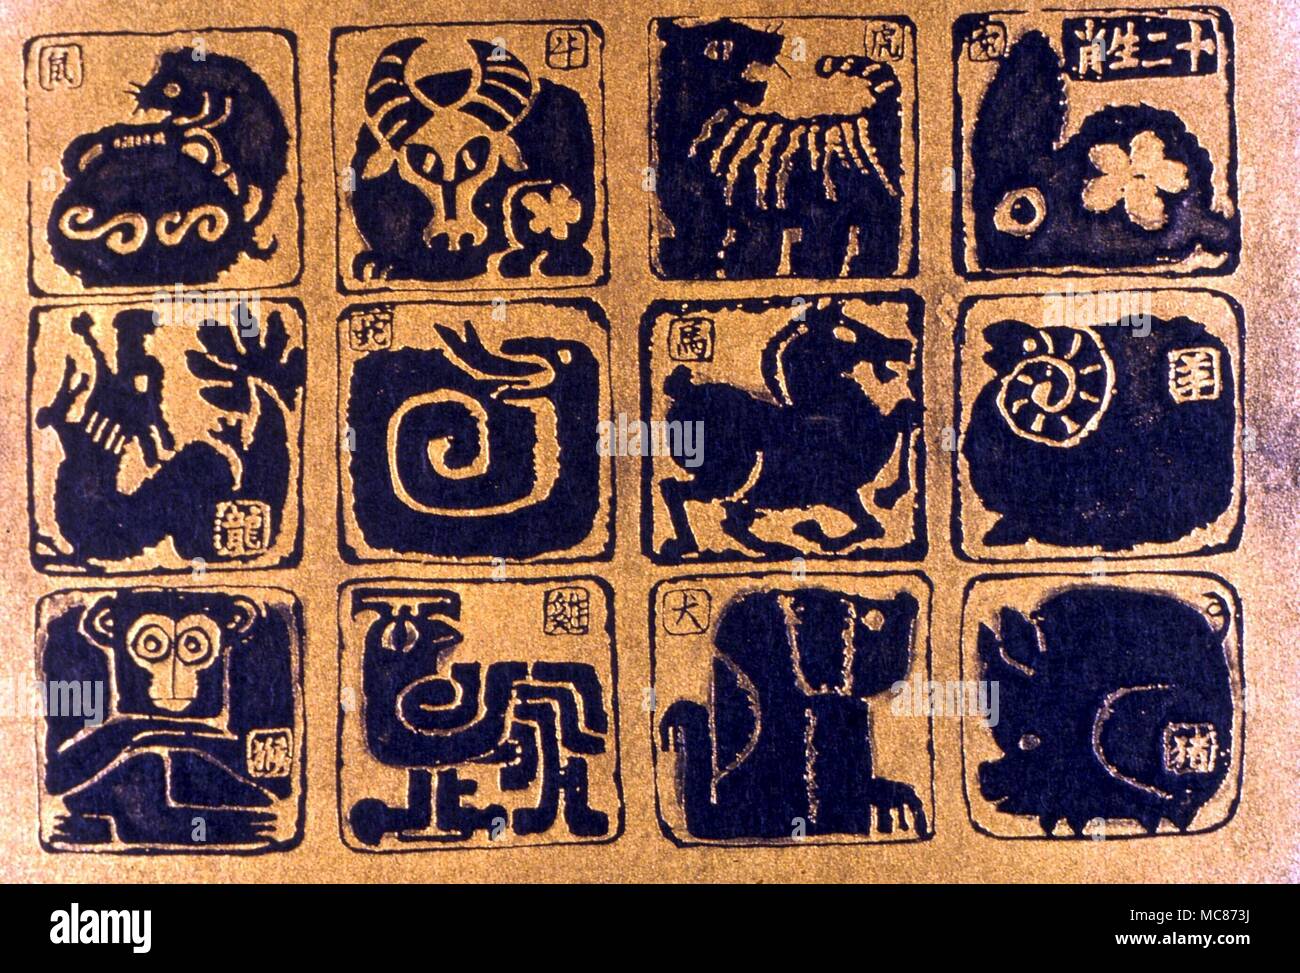 Animali - Il serpente è uno dei dodici immagini del cinese tradizionale dello zodiaco, e non trova alcuna corrispondenza nel Western immaginario zodiacale. Stampa cinese - Collezione privata Foto Stock